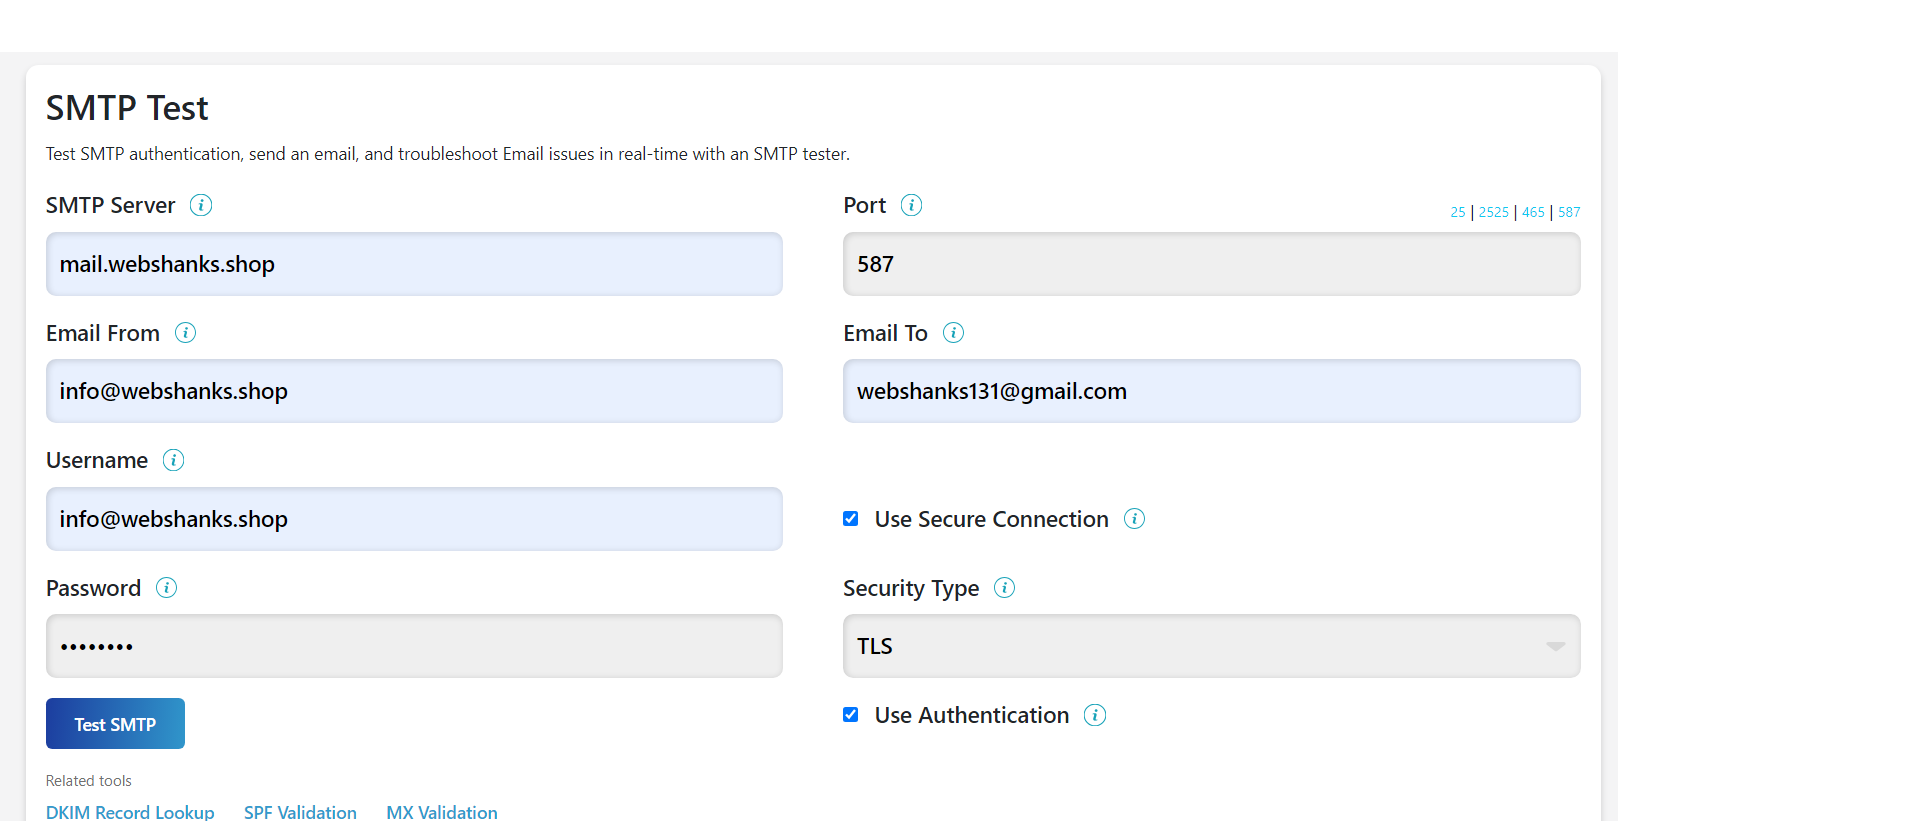 SMTP Relay Test for Docker Mailserver